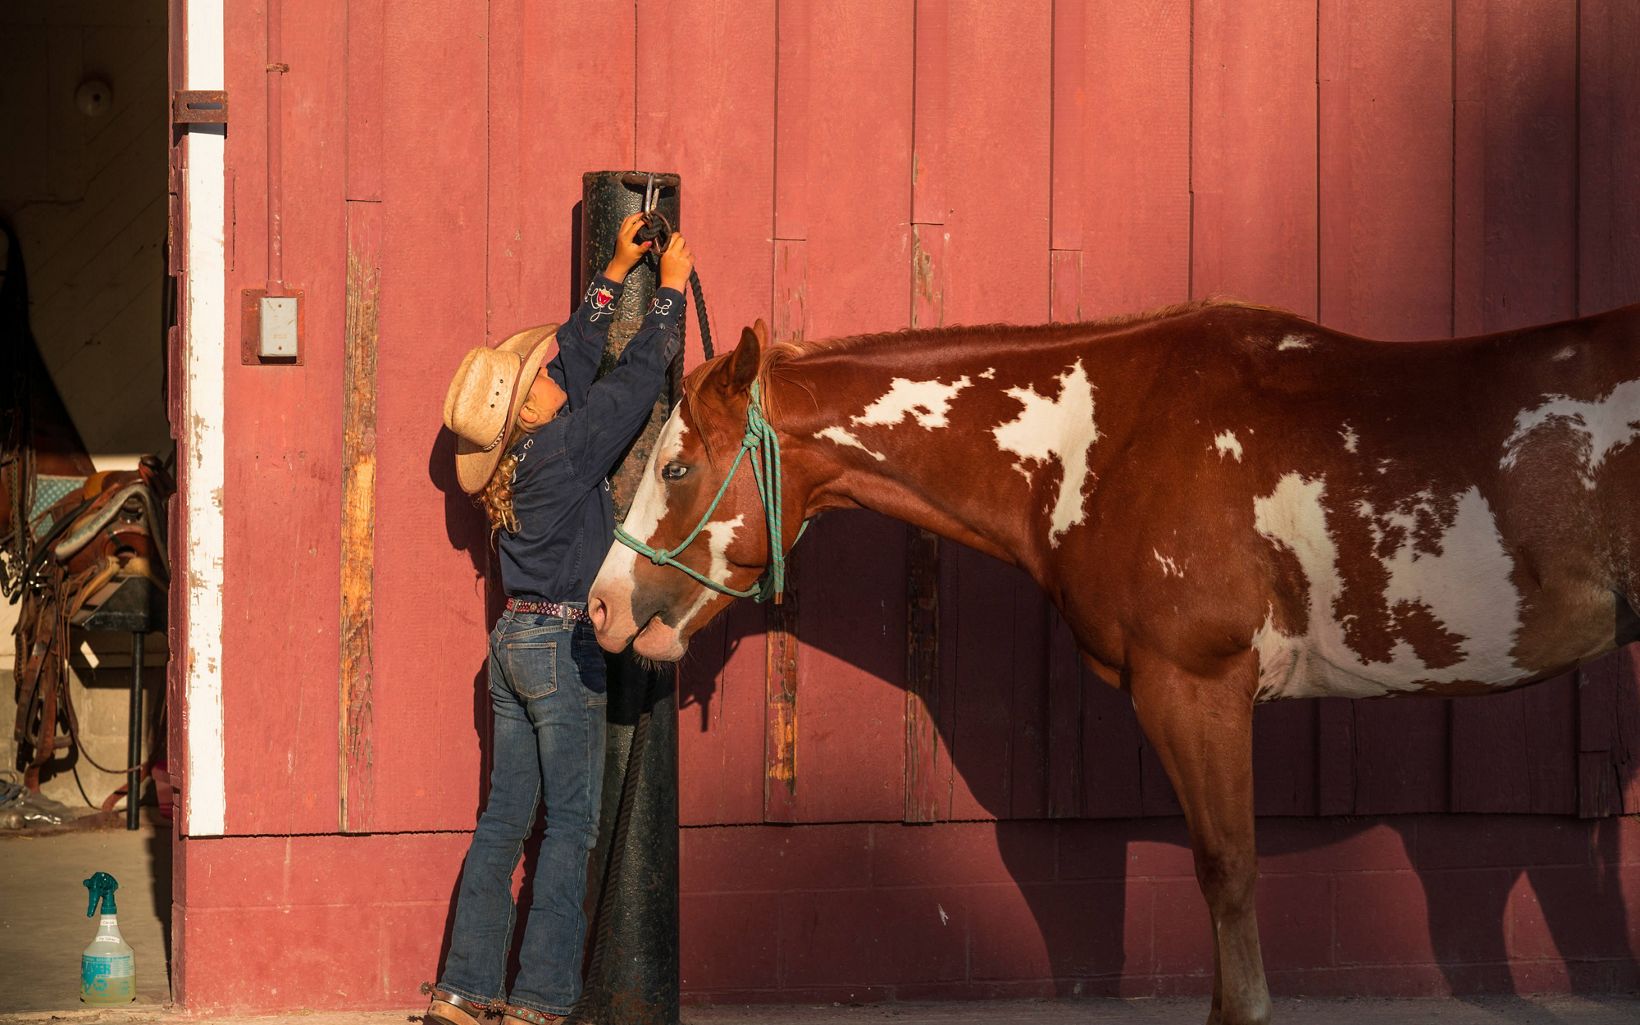 Vaqueros de la costa En el rancho de trabajo de la reserva Dangermond, la hija del capataz del rancho, Justin Cota, guarda los caballos después de un paseo. © Bill Marr/TNC